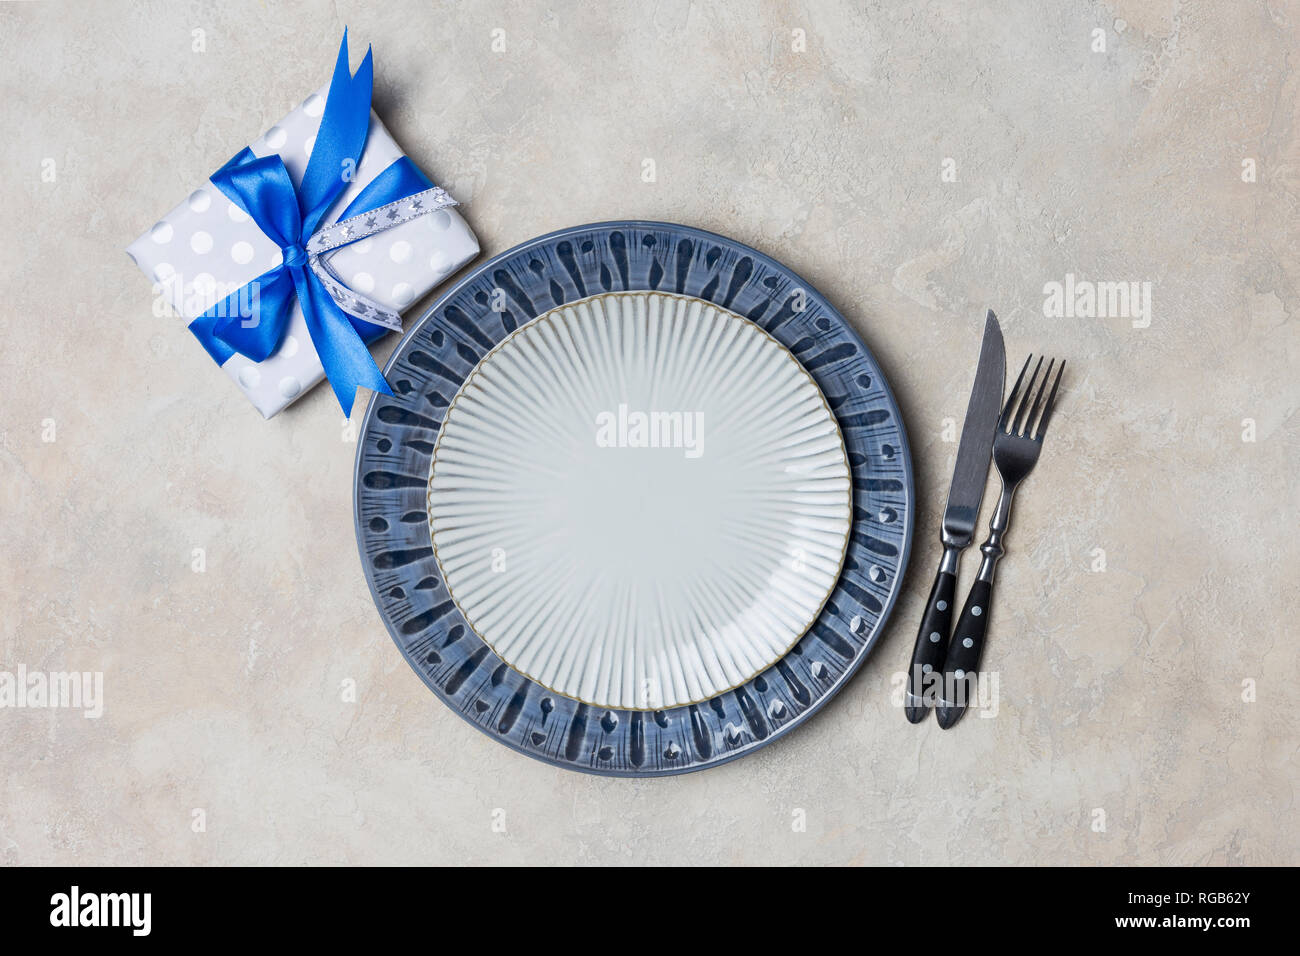 La plaque bleue et blanche avec présent fort pour les hommes avec fourchette et couteau sur fond blanc. Valentine's Day set de table Banque D'Images